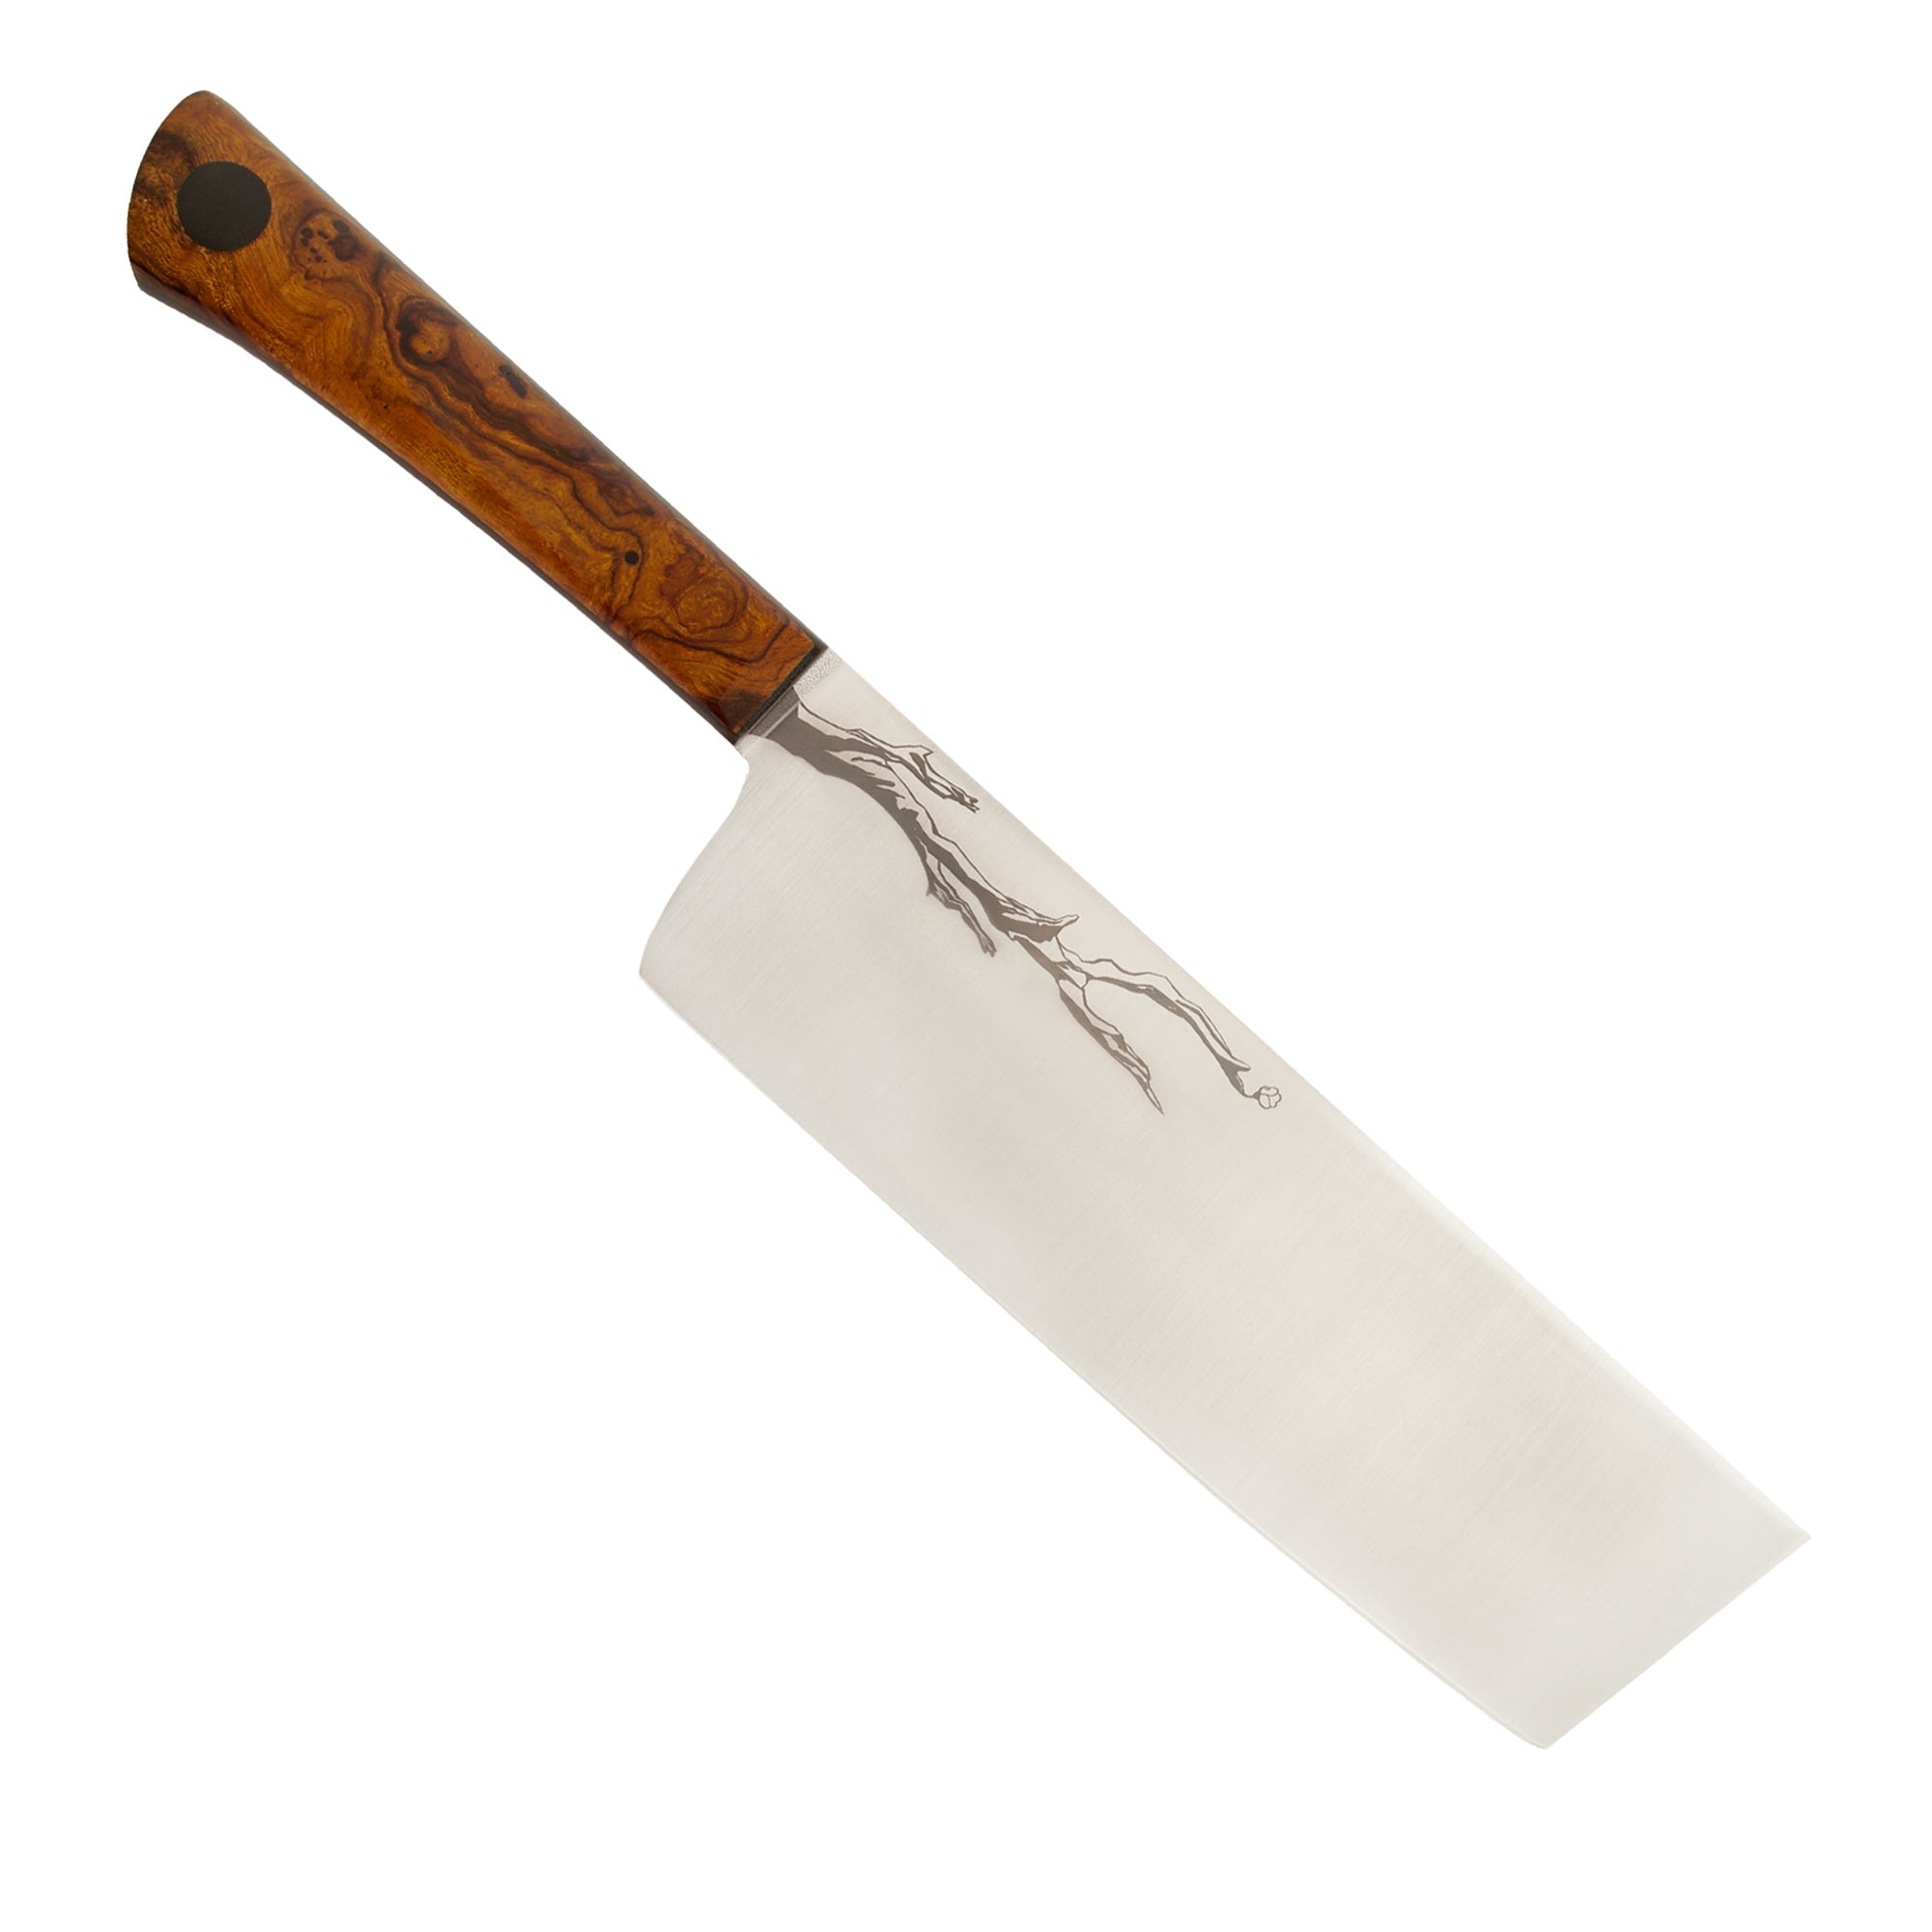 Town Cutler Olneya nakiri knife with Desert Ironwood branch engraved on backside of knife blade.